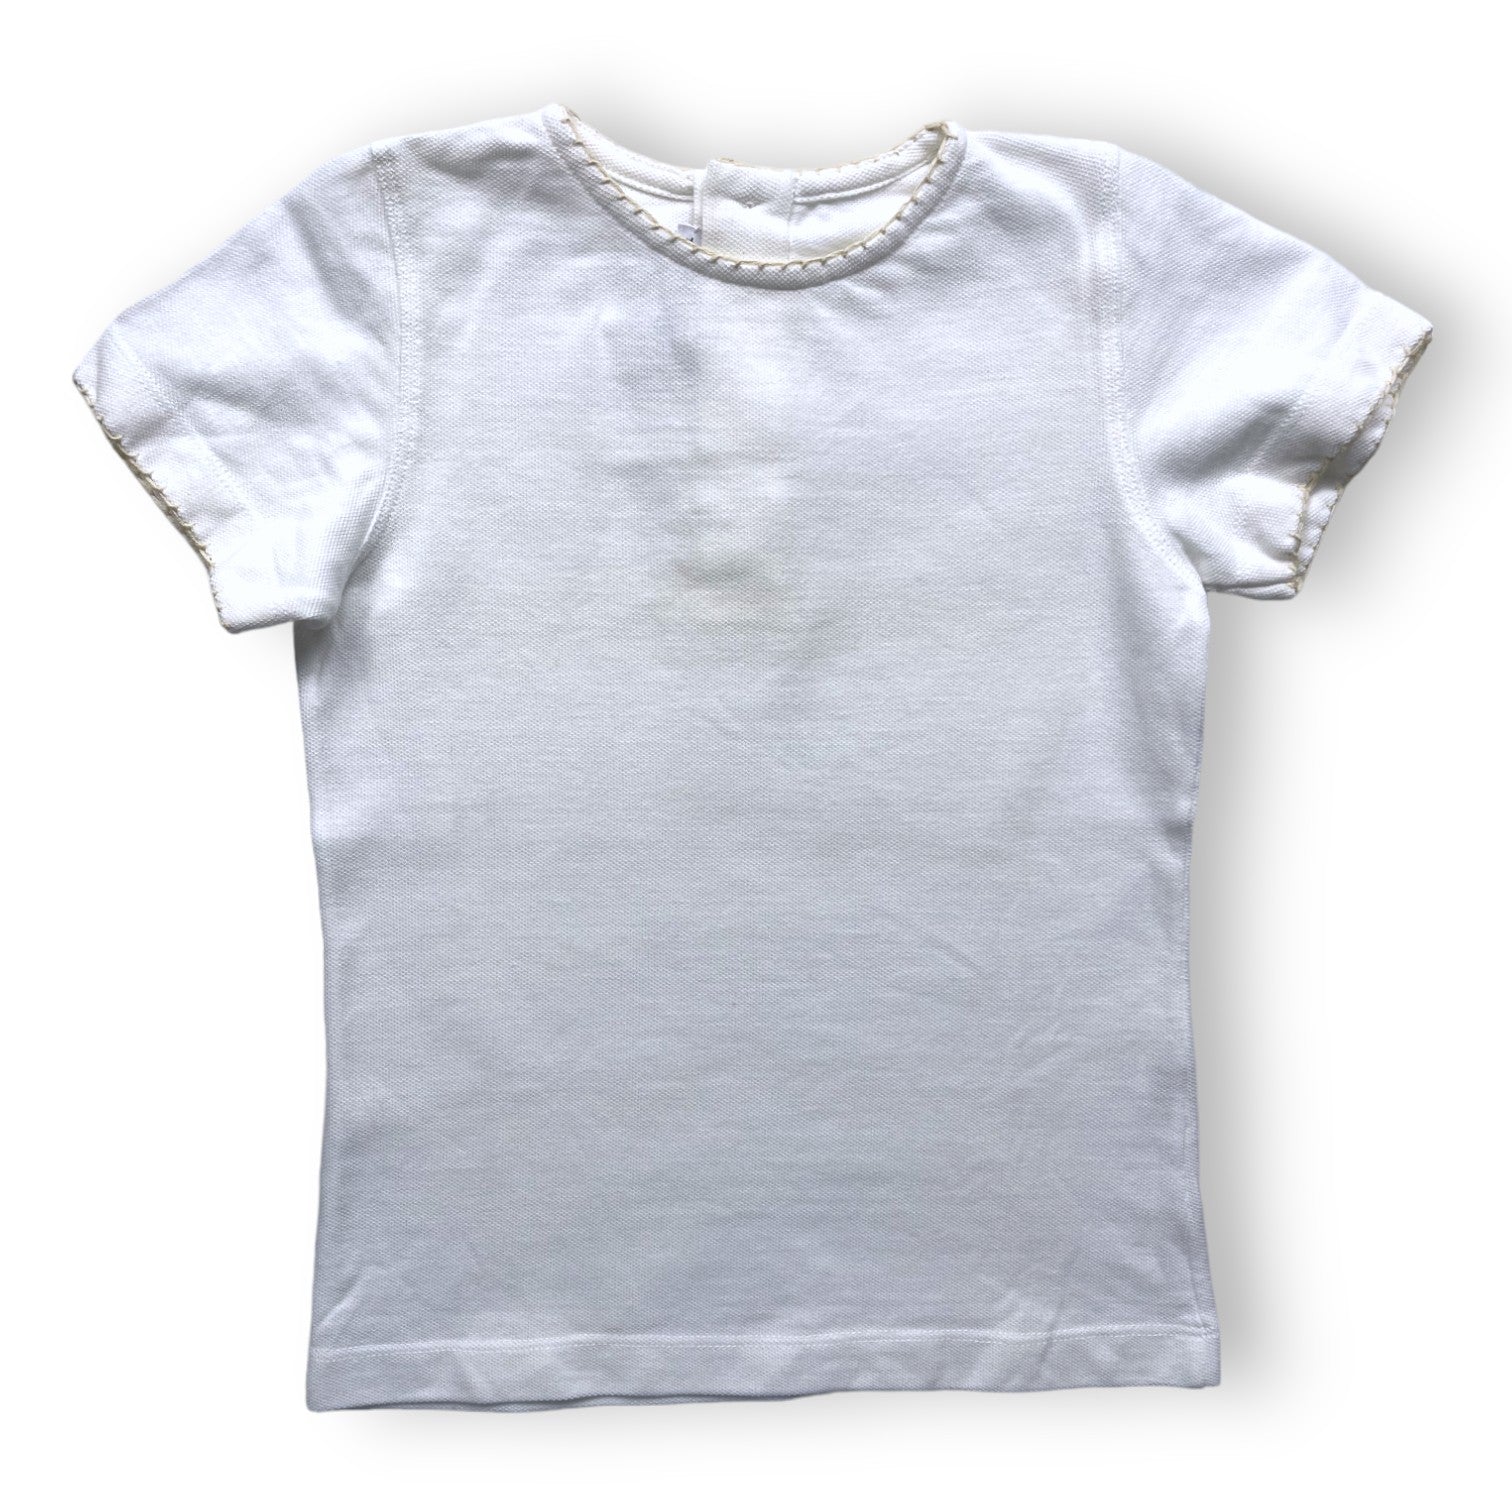 LA CHATELAINE - T shirt en coton liseré beige - 4 ans